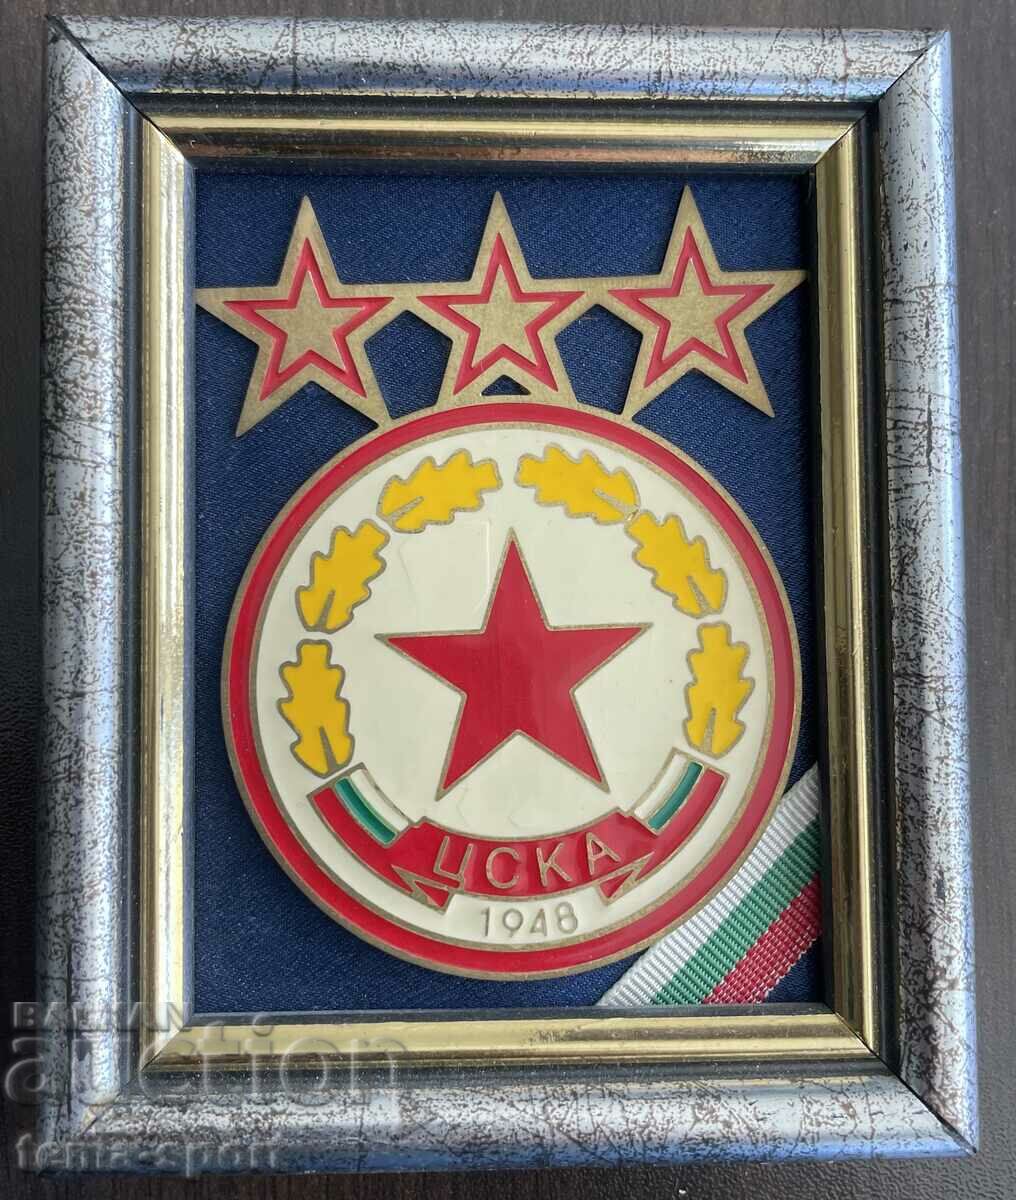 458 Bulgaria cadru miniatural cu emblema CSKA